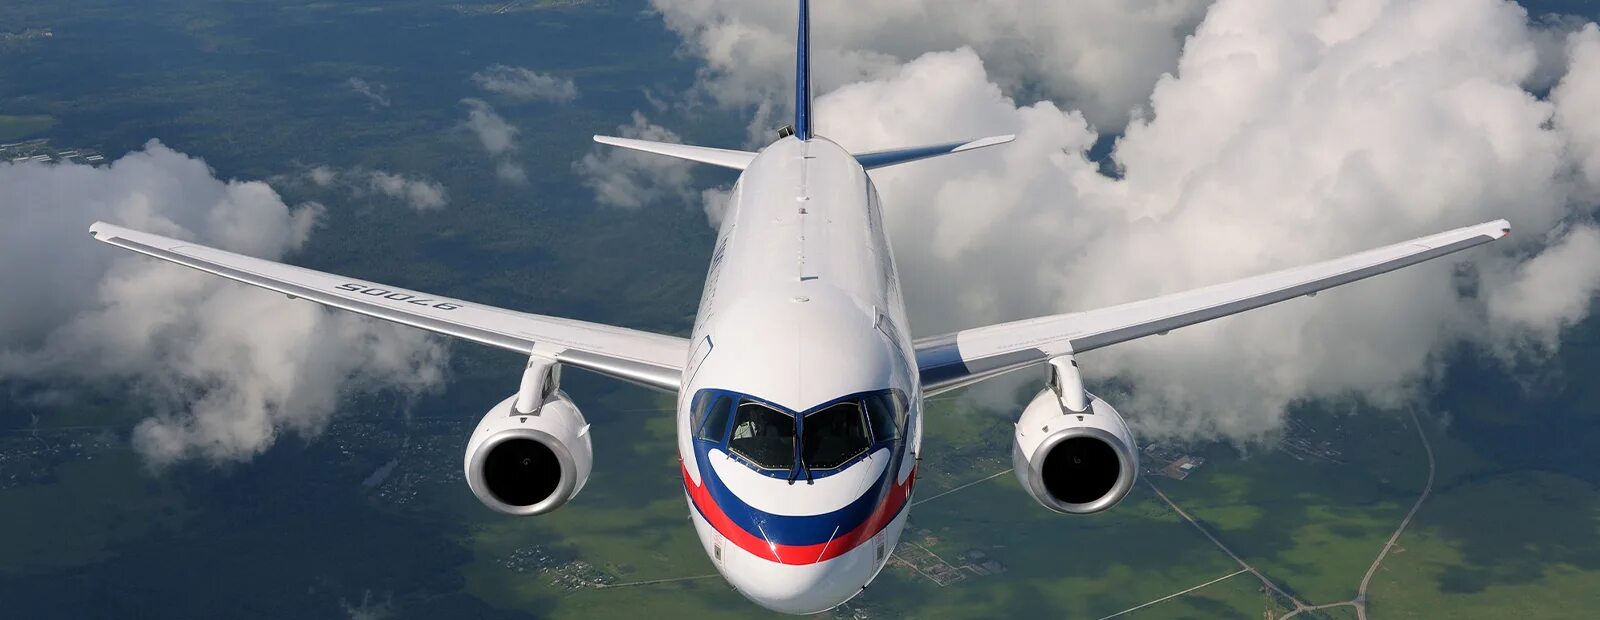 Суперджет 100. Sukhoi Superjet 100. SSJ-100 самолет. Пассажирский самолет Суперджет 100.